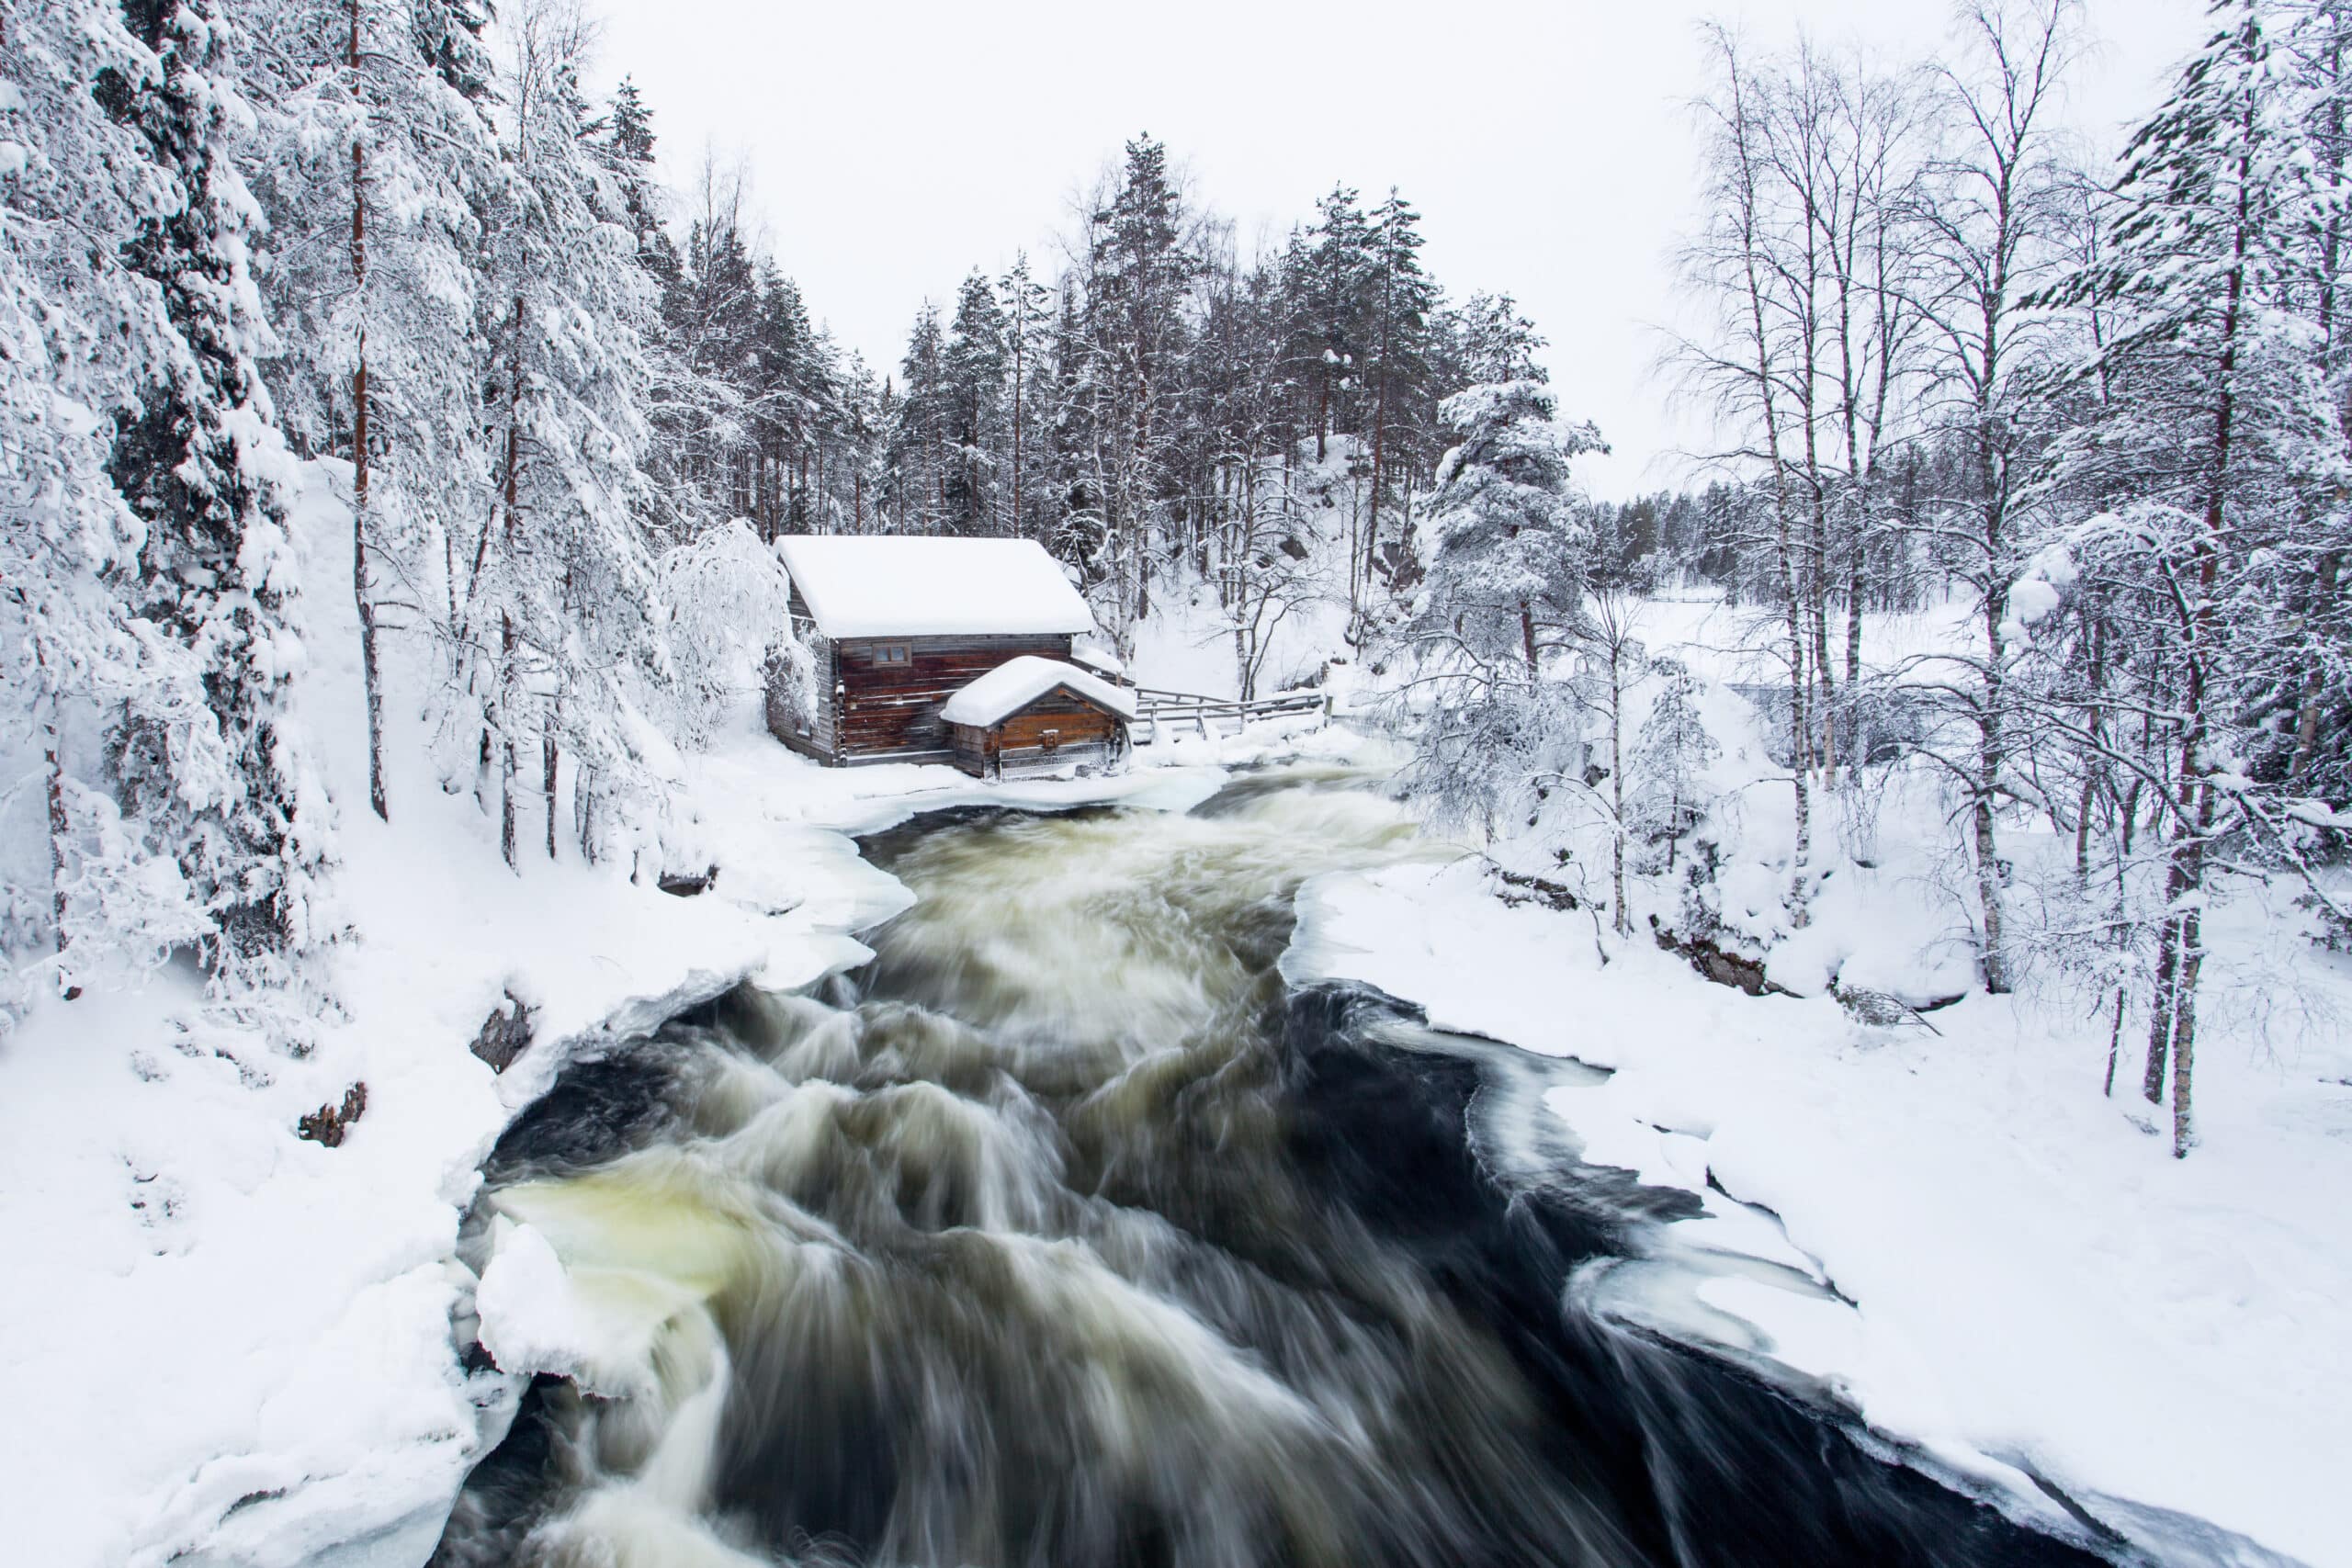 Parc national d'Oulanka. Le moulin à eau Myllykoski à Pieni Karhunkierros, sentier de randonnée pendant la journée d'hiver et de froid avec des rapides qui s'écoulent dans la nature finlandaise, en Europe du Nord.